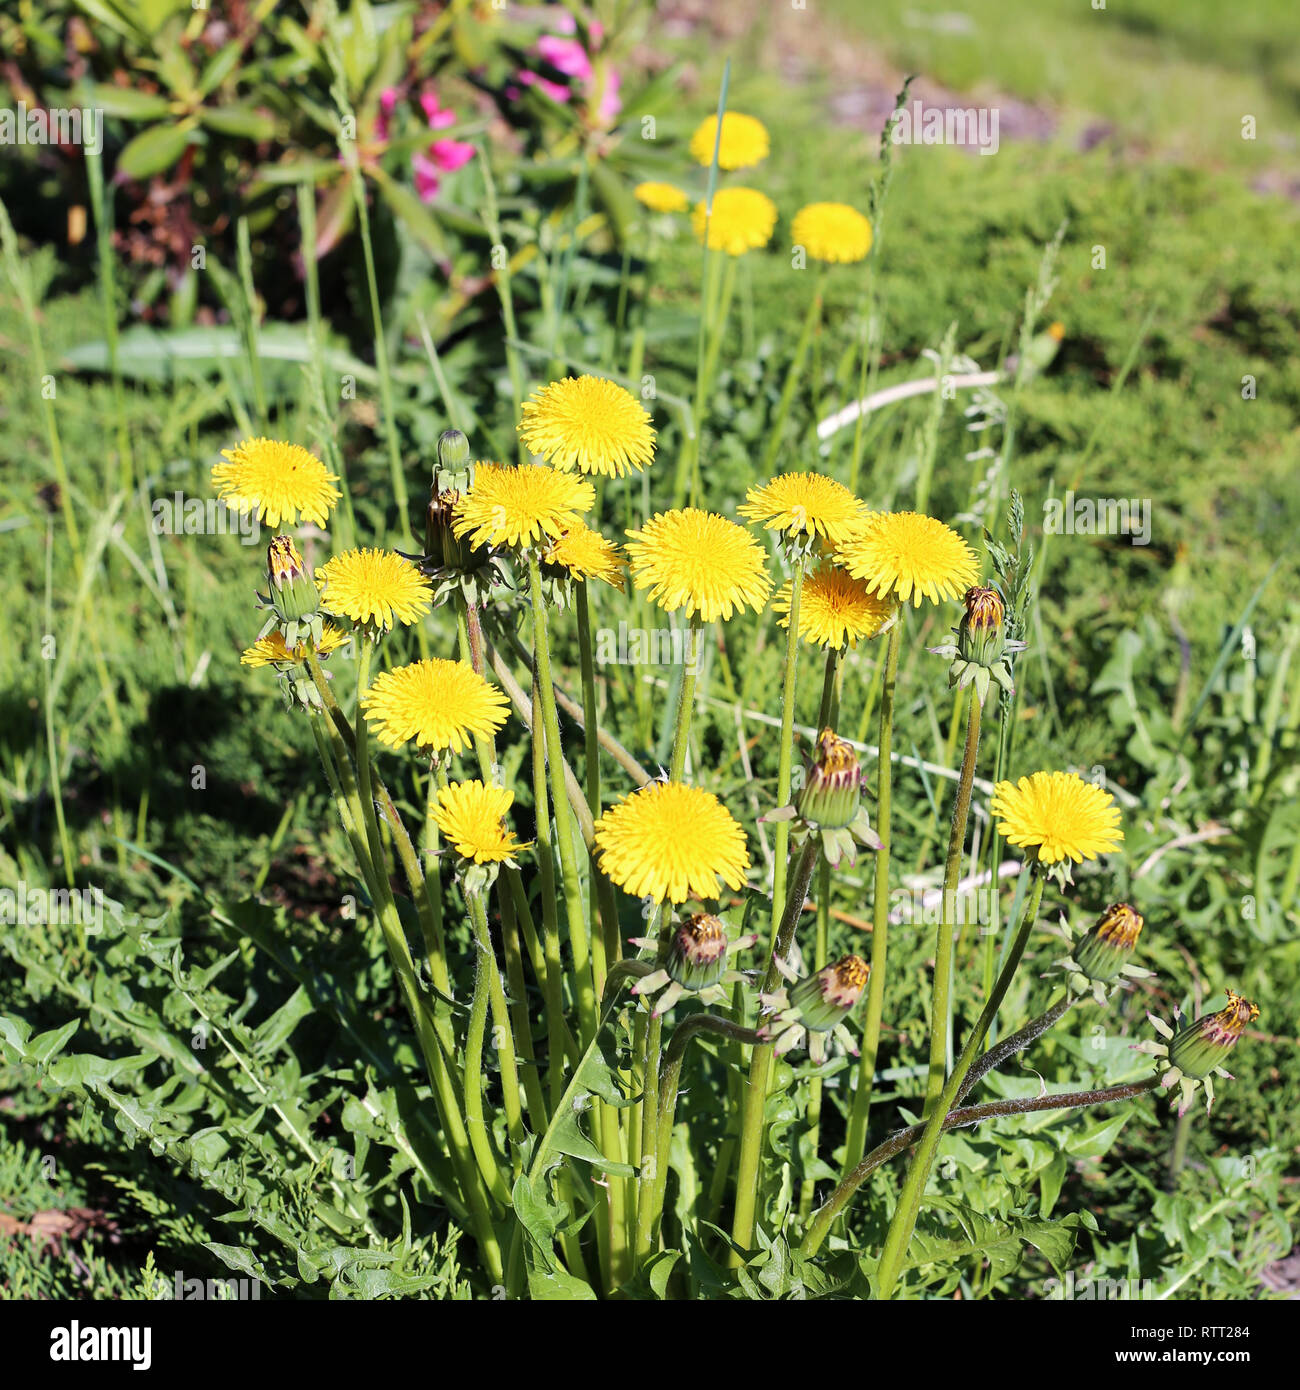 Bellissimo il tarassaco giallo su un prato verde. Fotografato in un parco durante una soleggiata giornata di primavera in Finlandia. Bella immagine a colori della bellezza della natura Foto Stock